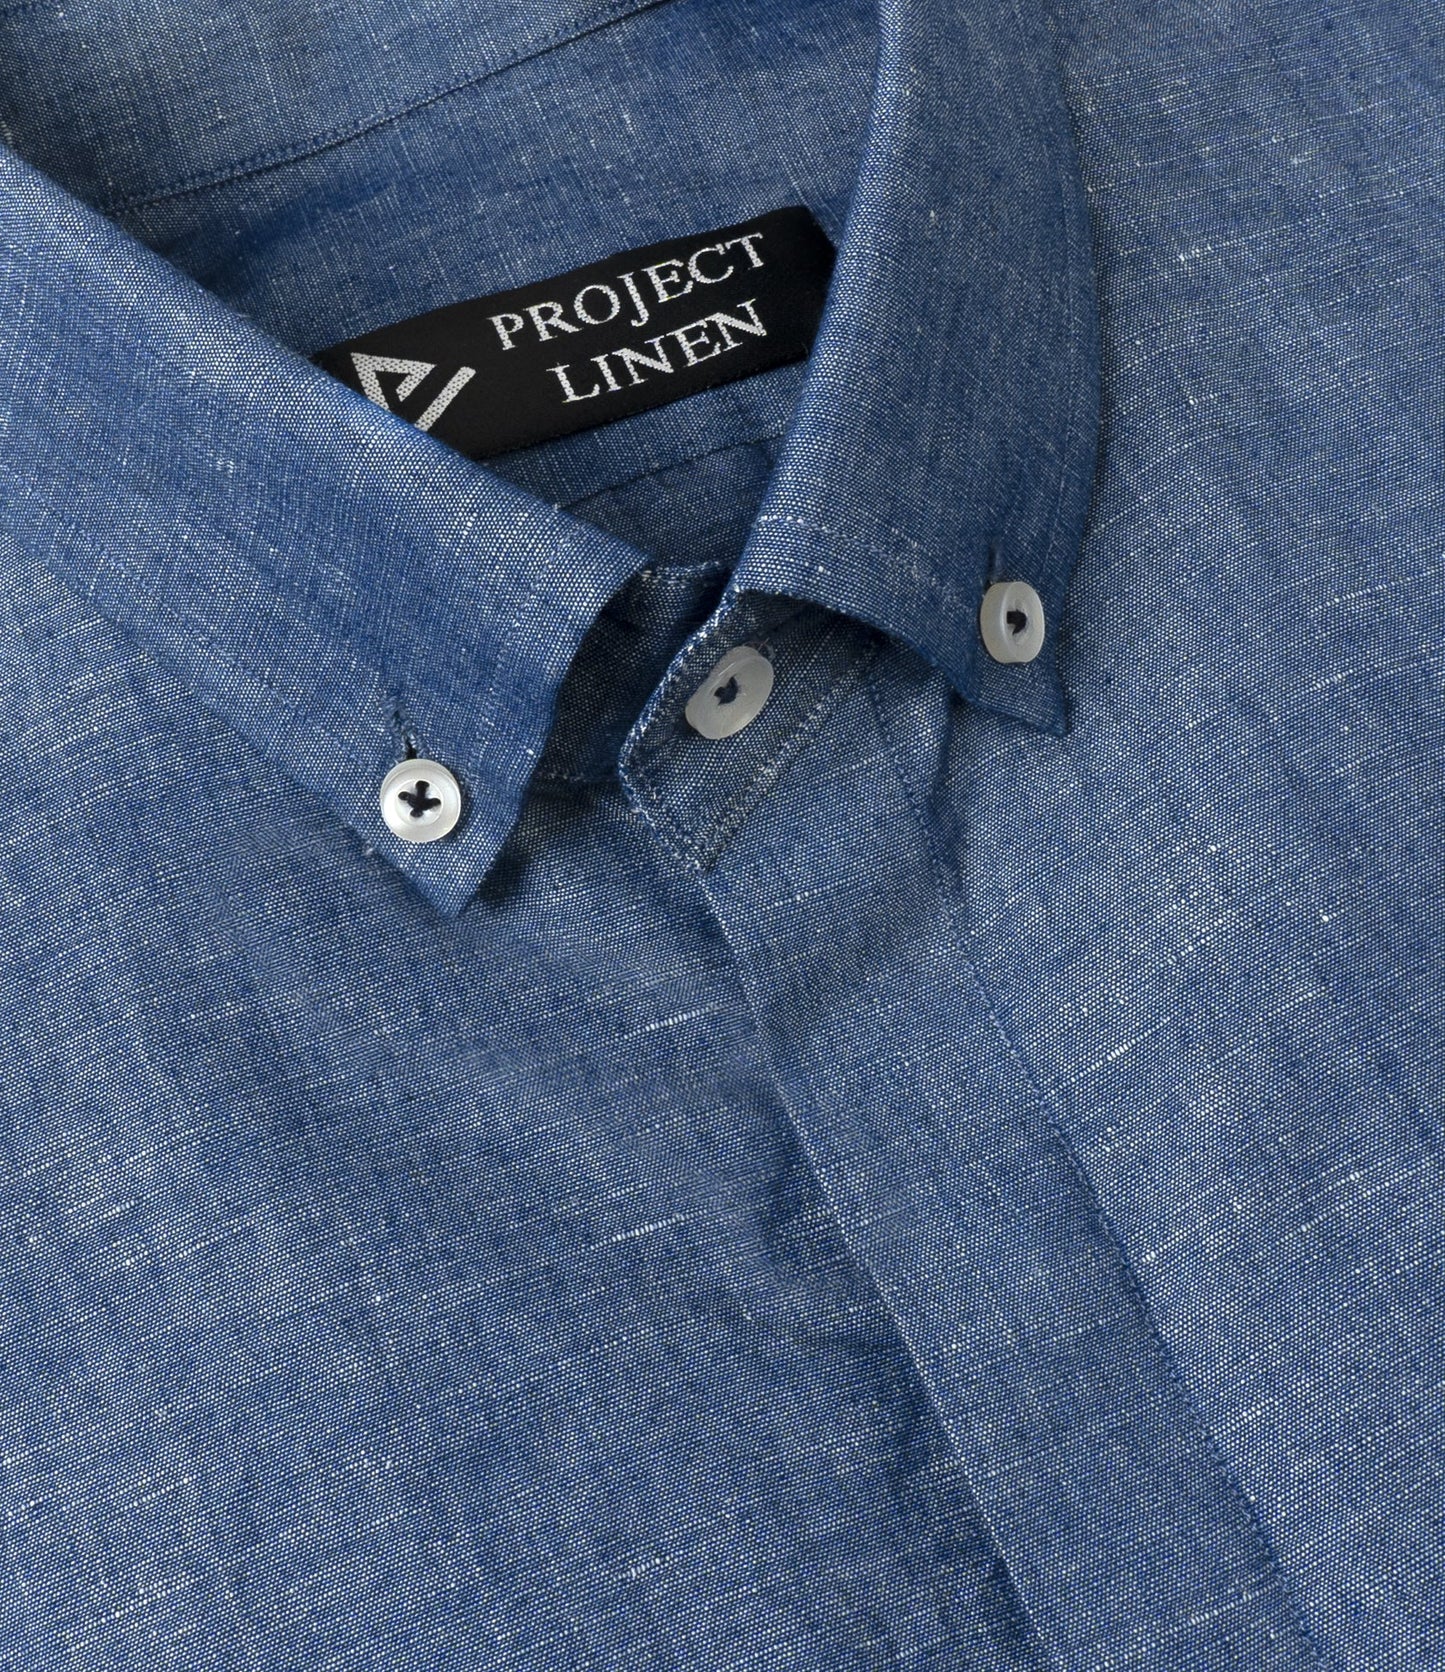 Denim Blue Button Down Linen Shirt - Her's